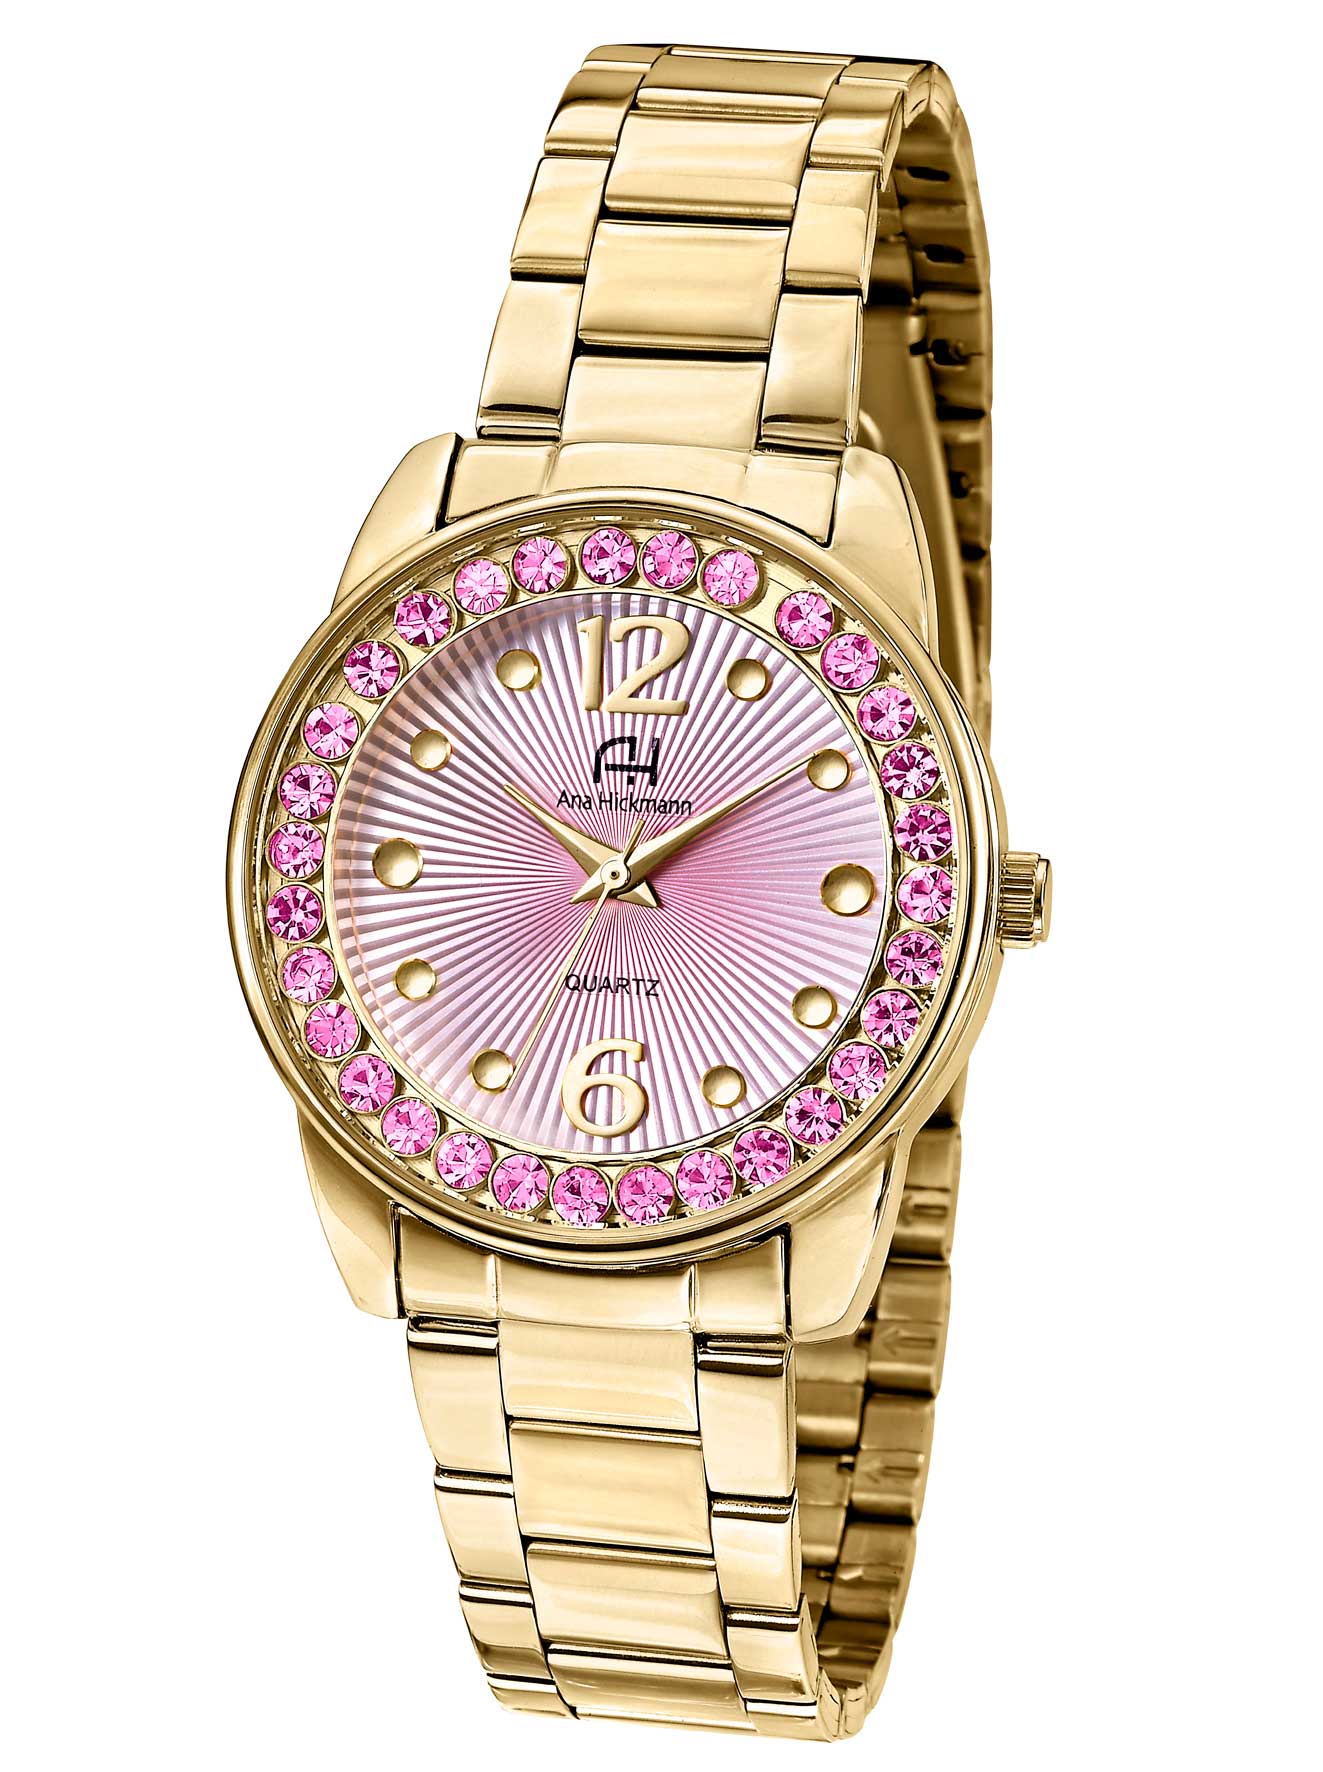 Os 10 relógios Ana Hickmann mais vendidos